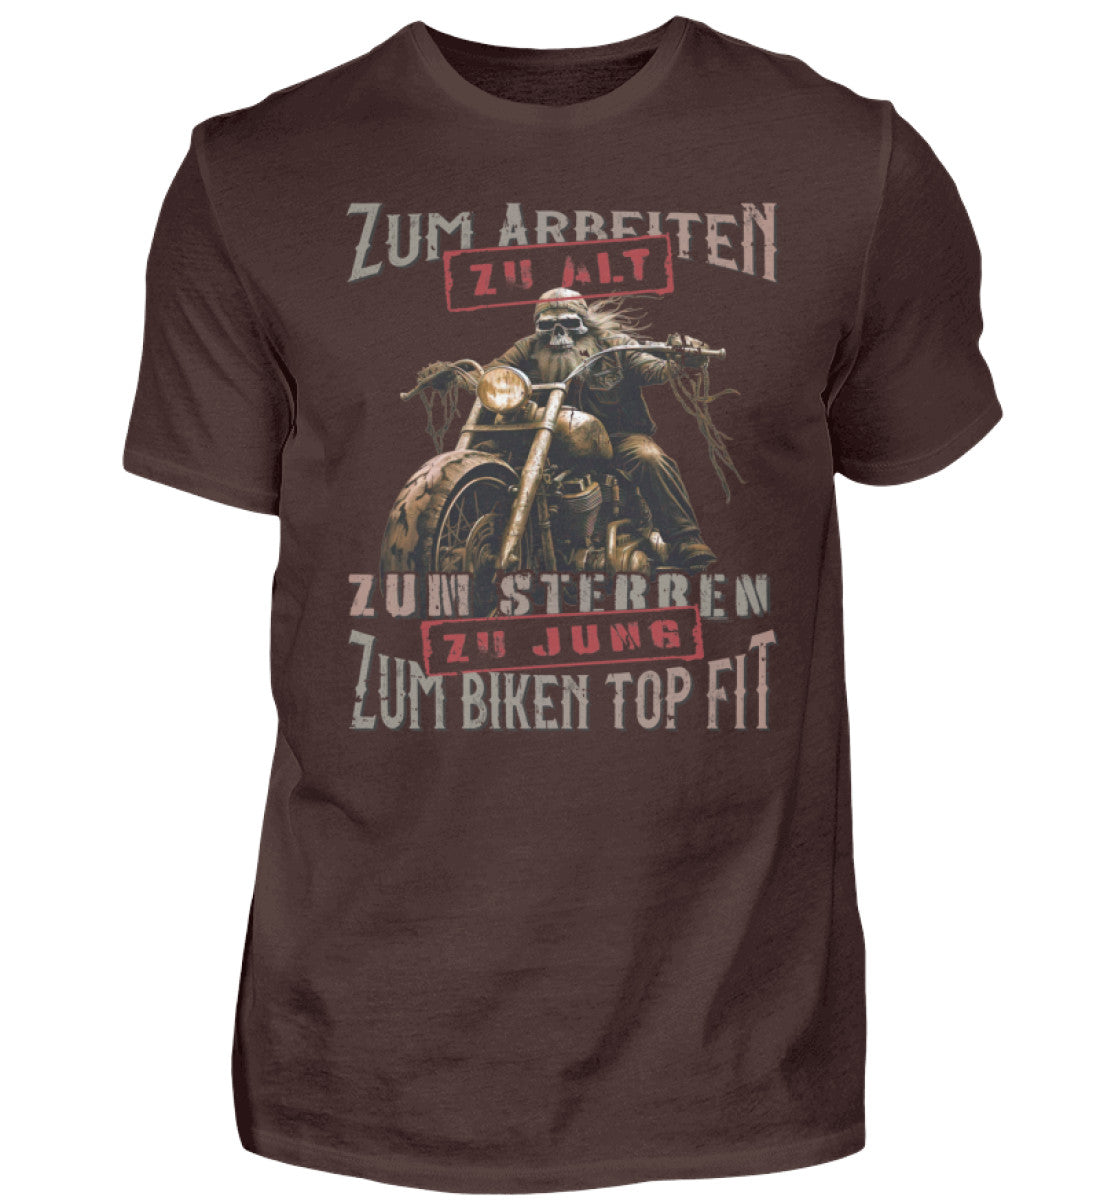 Ein Biker T-Shirt für Motorradfahrer von Wingbikers mit dem Aufdruck, Zum Arbeiten zu alt, zum Sterben zu jung - Zum Biken top fit- in braun.